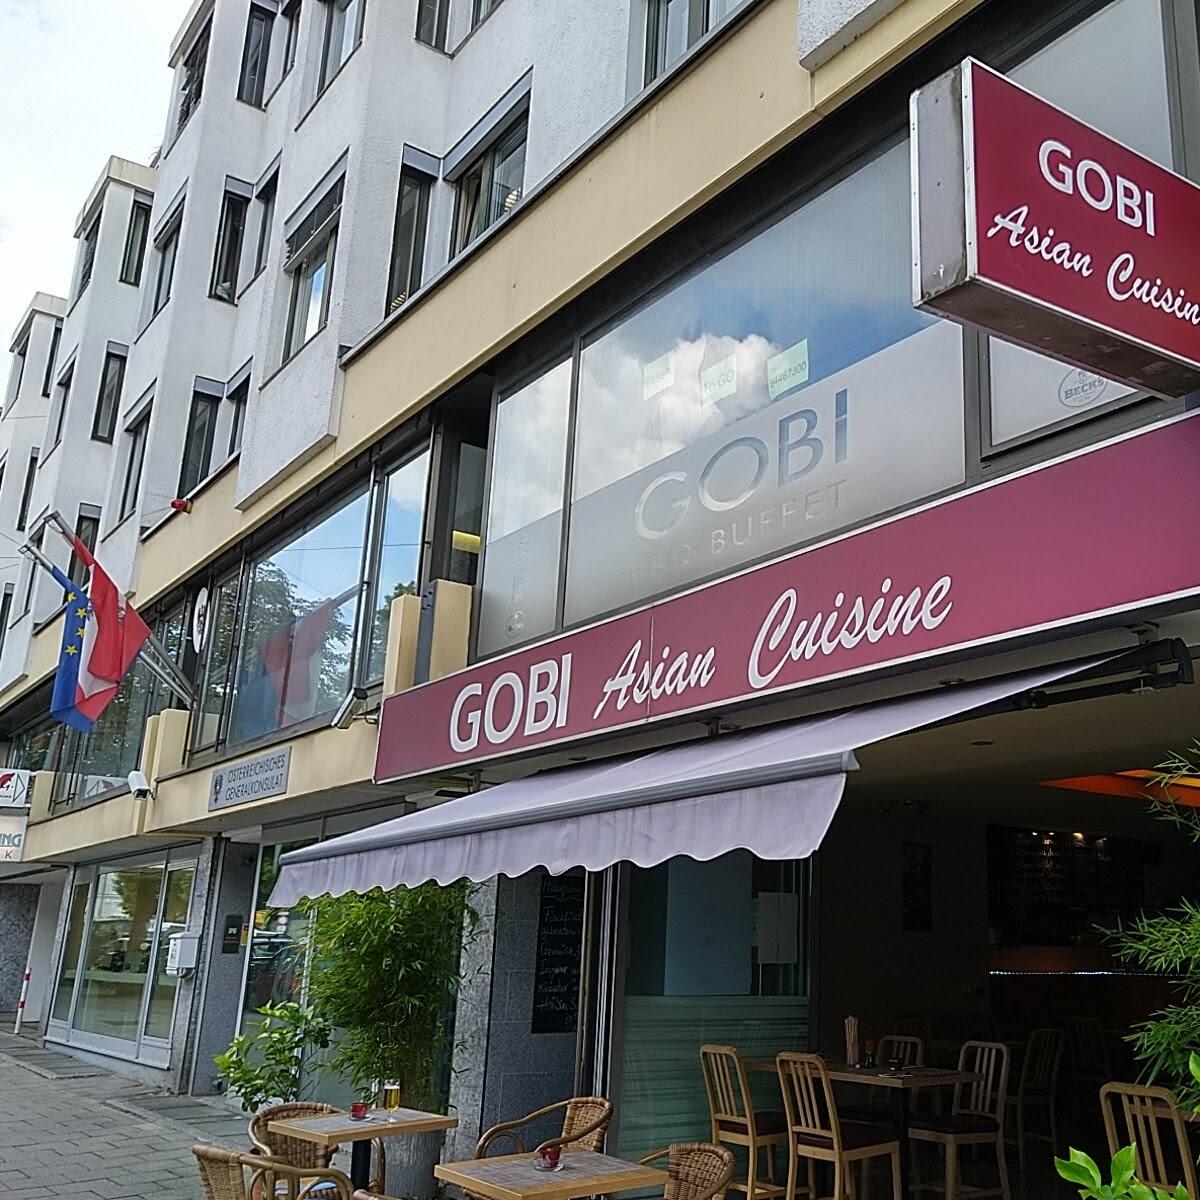 Restaurant "Gobi" in München